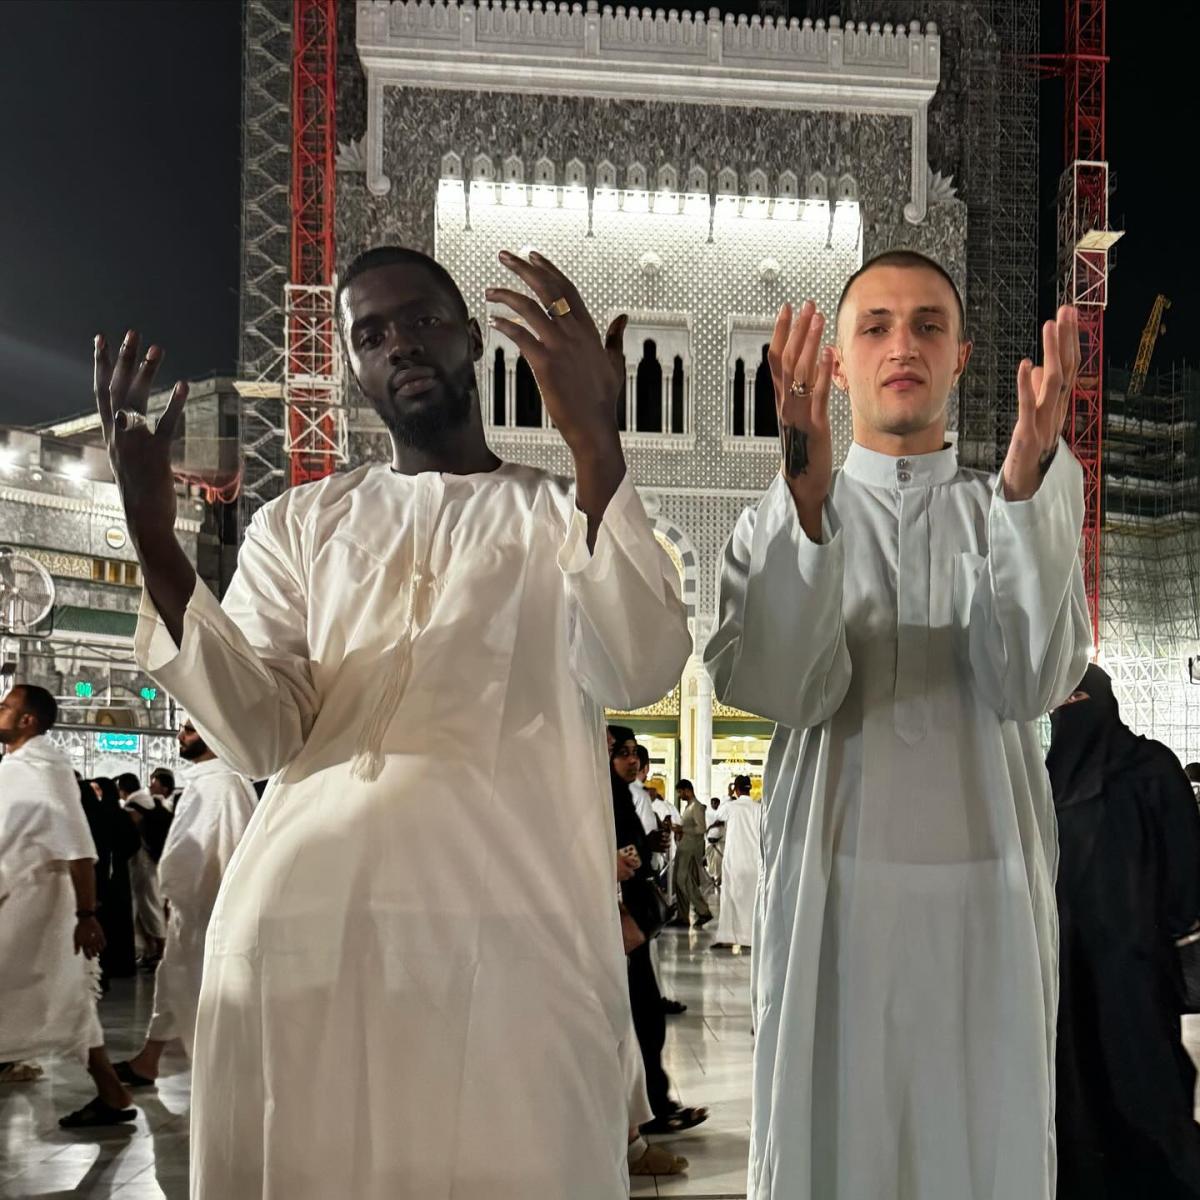 أنور حديد في مكة المكرمة "مرة مع إخواني الحقيقيين"